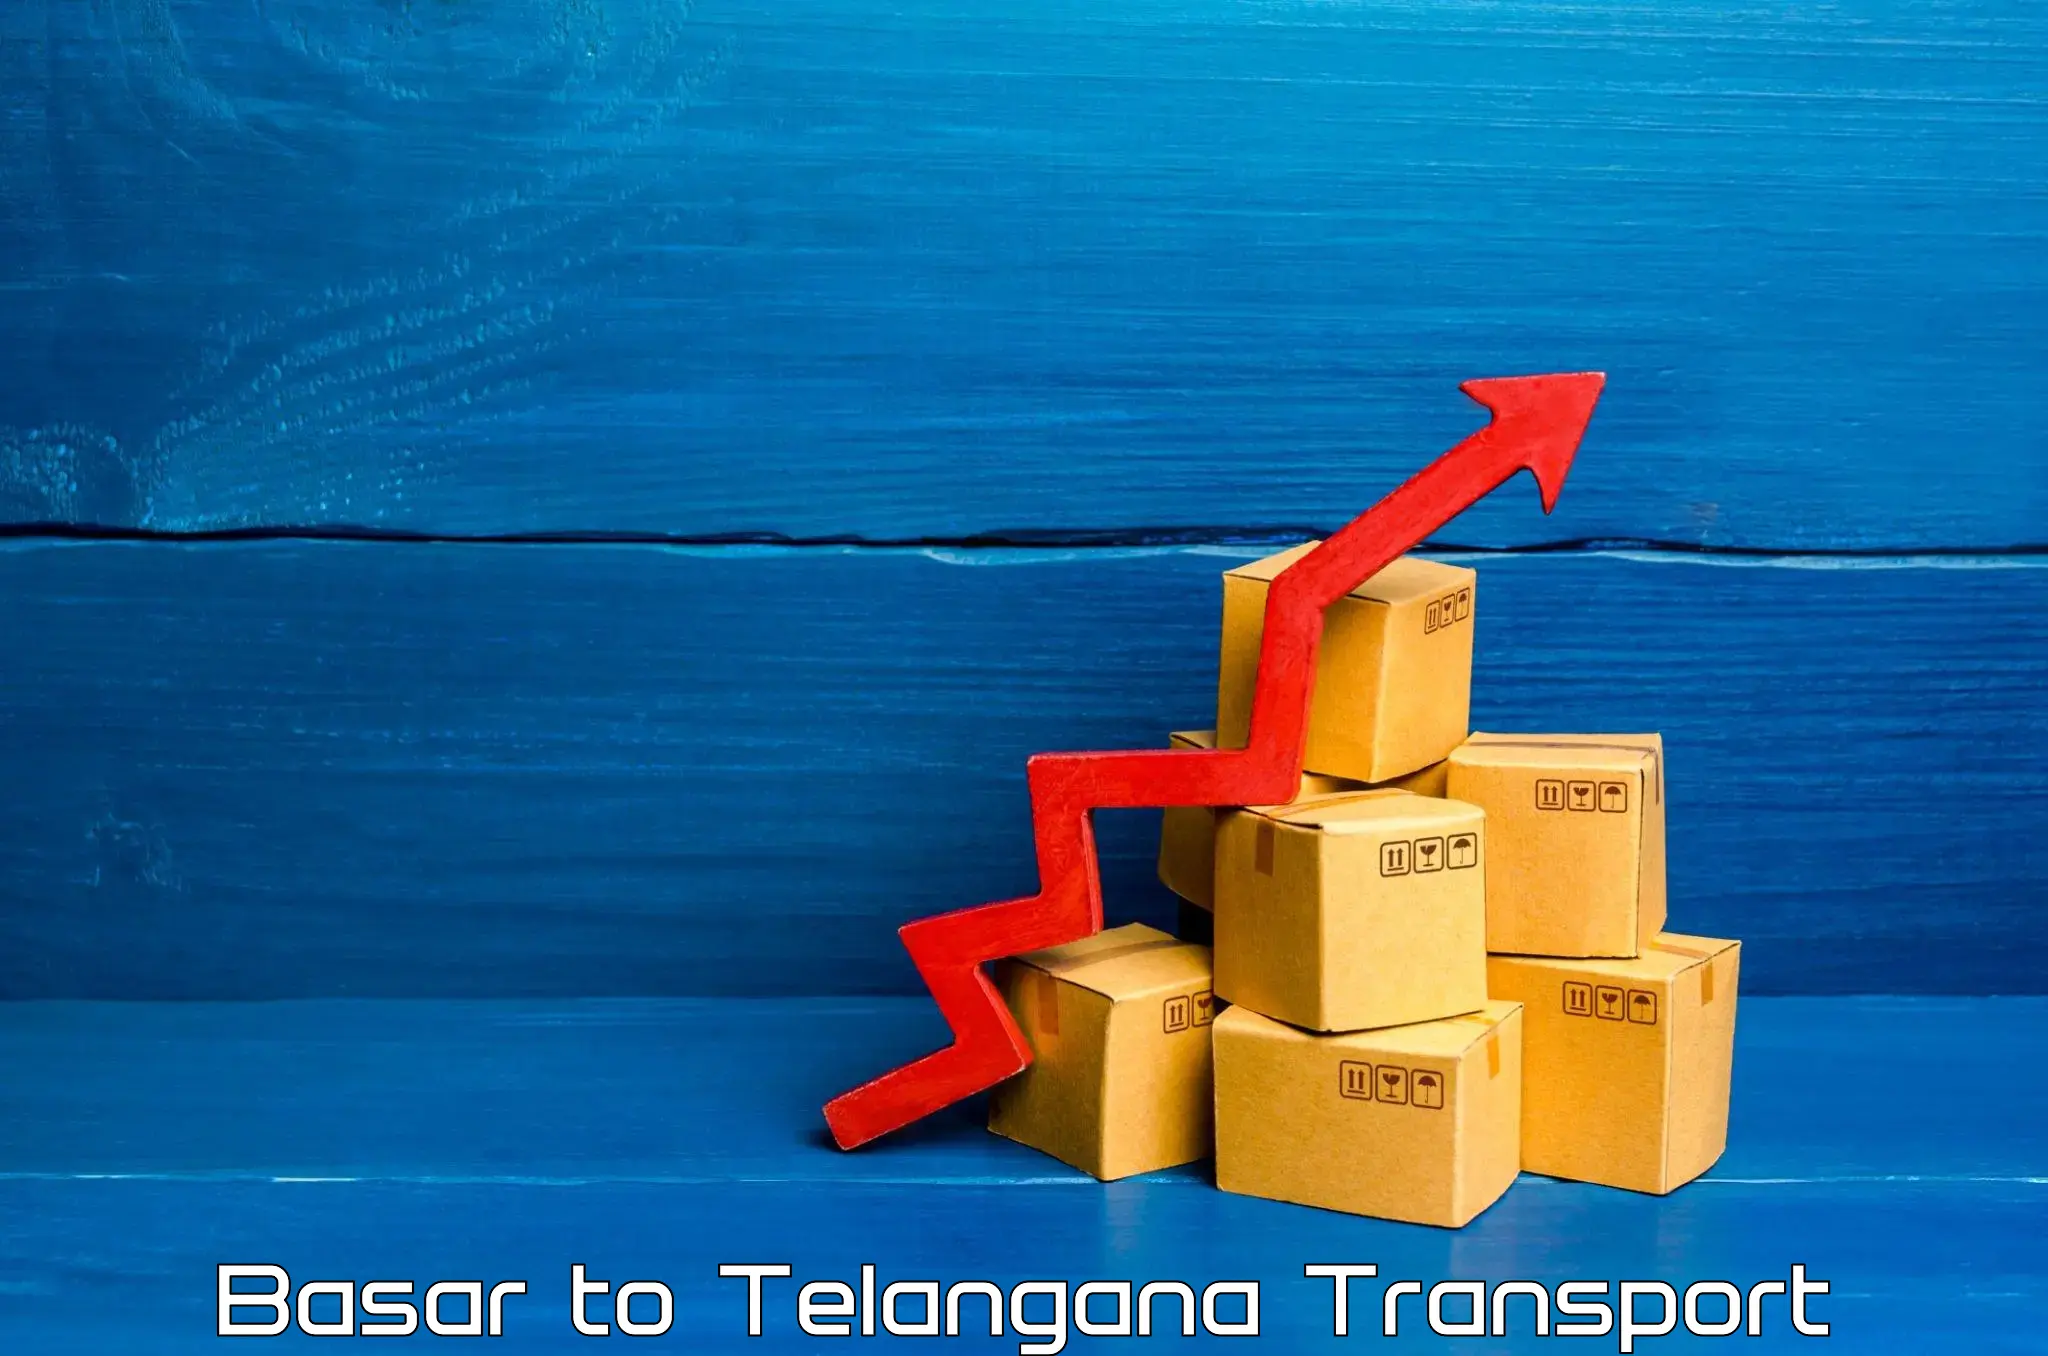 Container transport service Basar to Balanagar